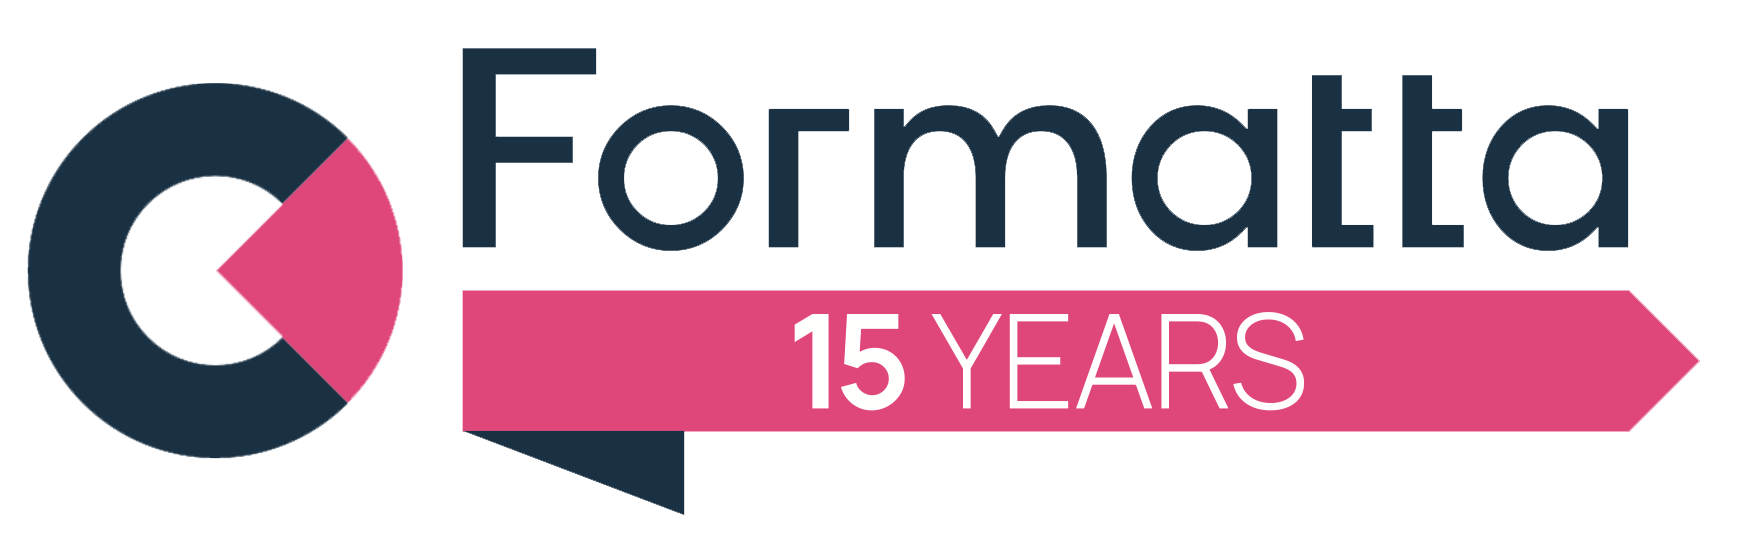 formatta-15-years